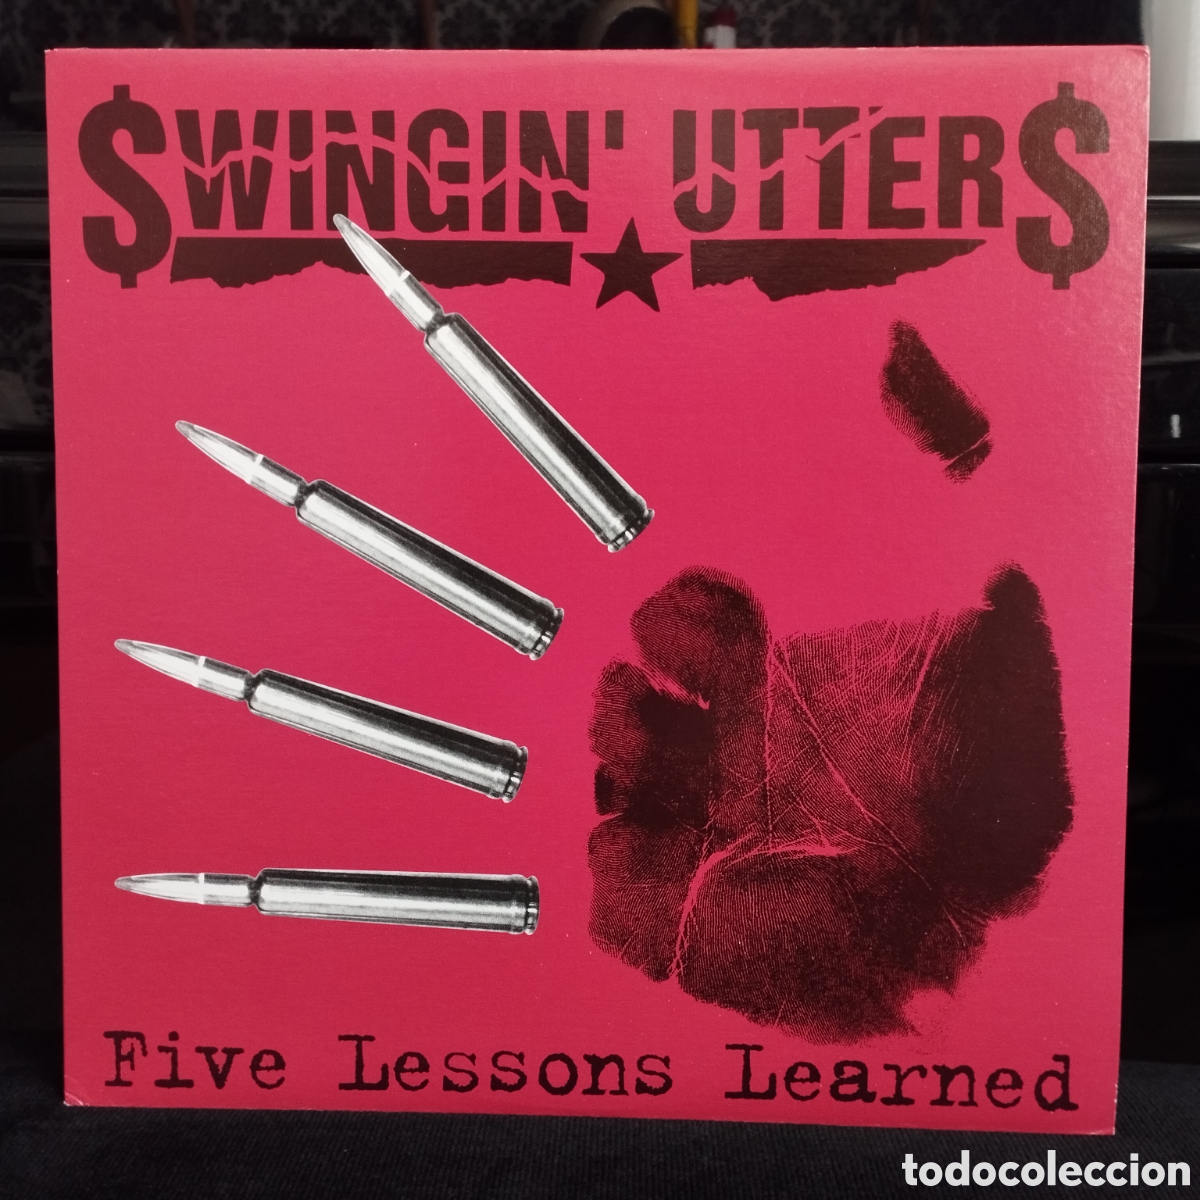 低価格化 FIVE LESSONS LEARNED SWINGIN' UTTERS thevalueweb.org